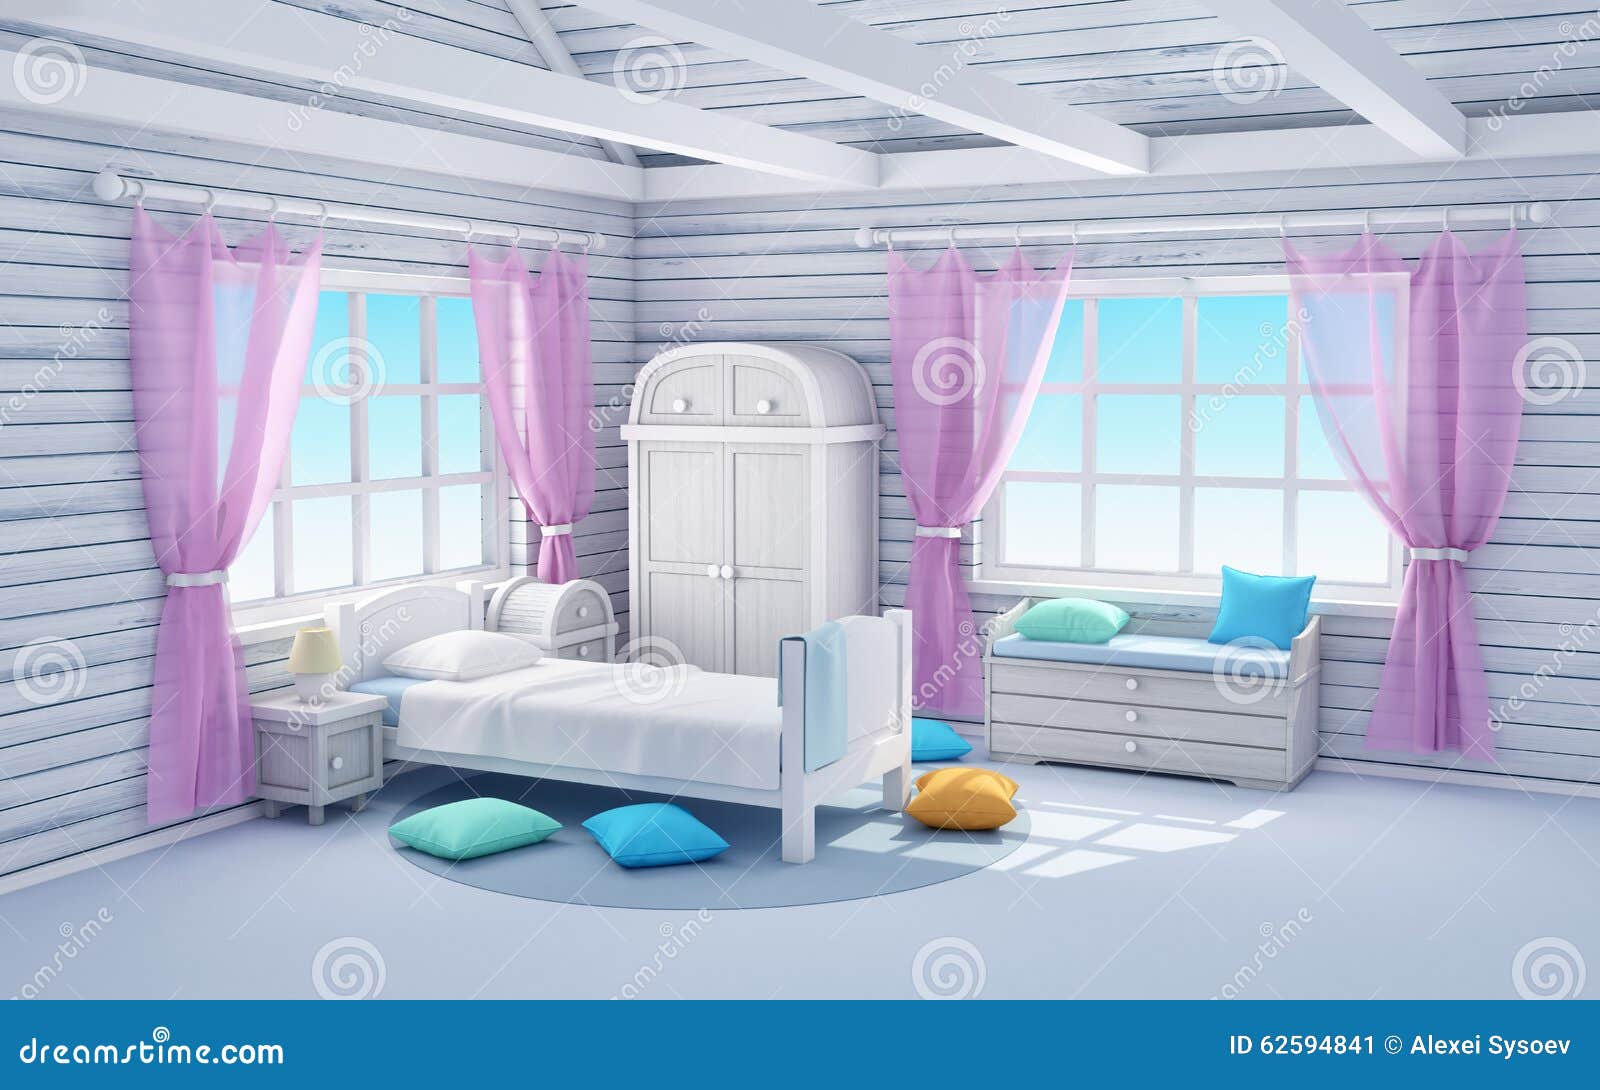 White dream bedroom stock illustration. Illustration of relax ...